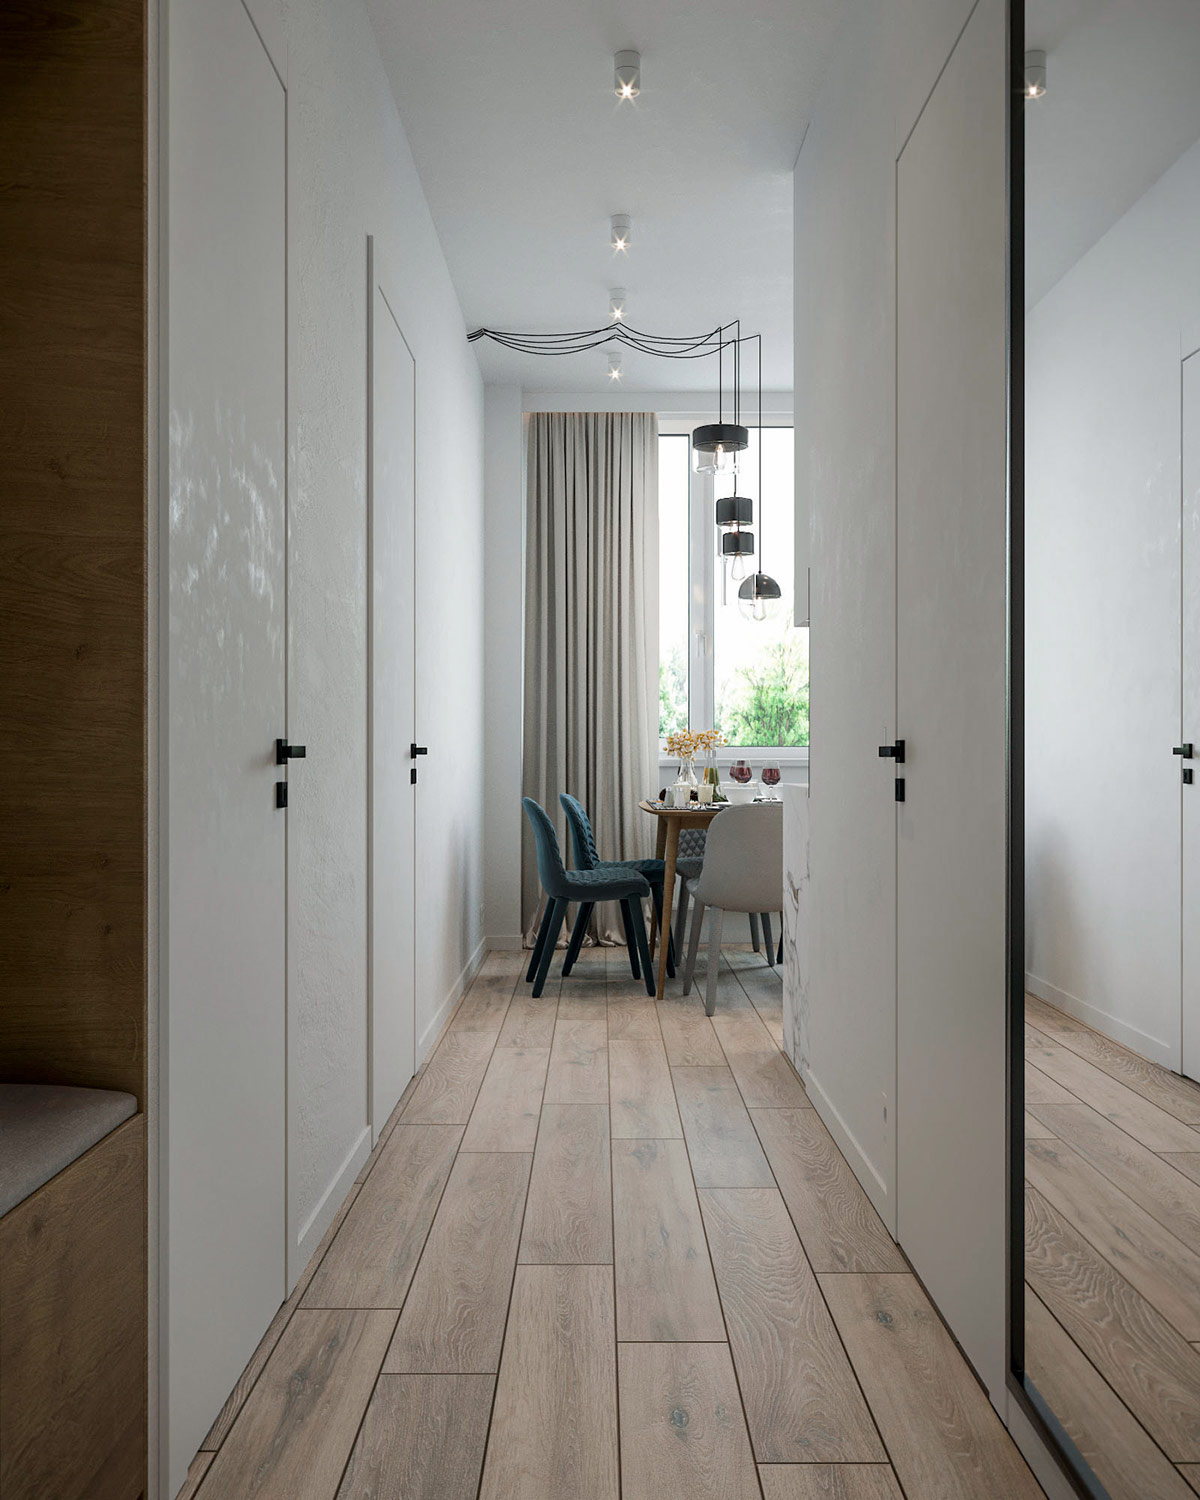 Gương từ trần đến sàn giúp mở rộng tầm nhìn lối vào căn hộ nhỏ.